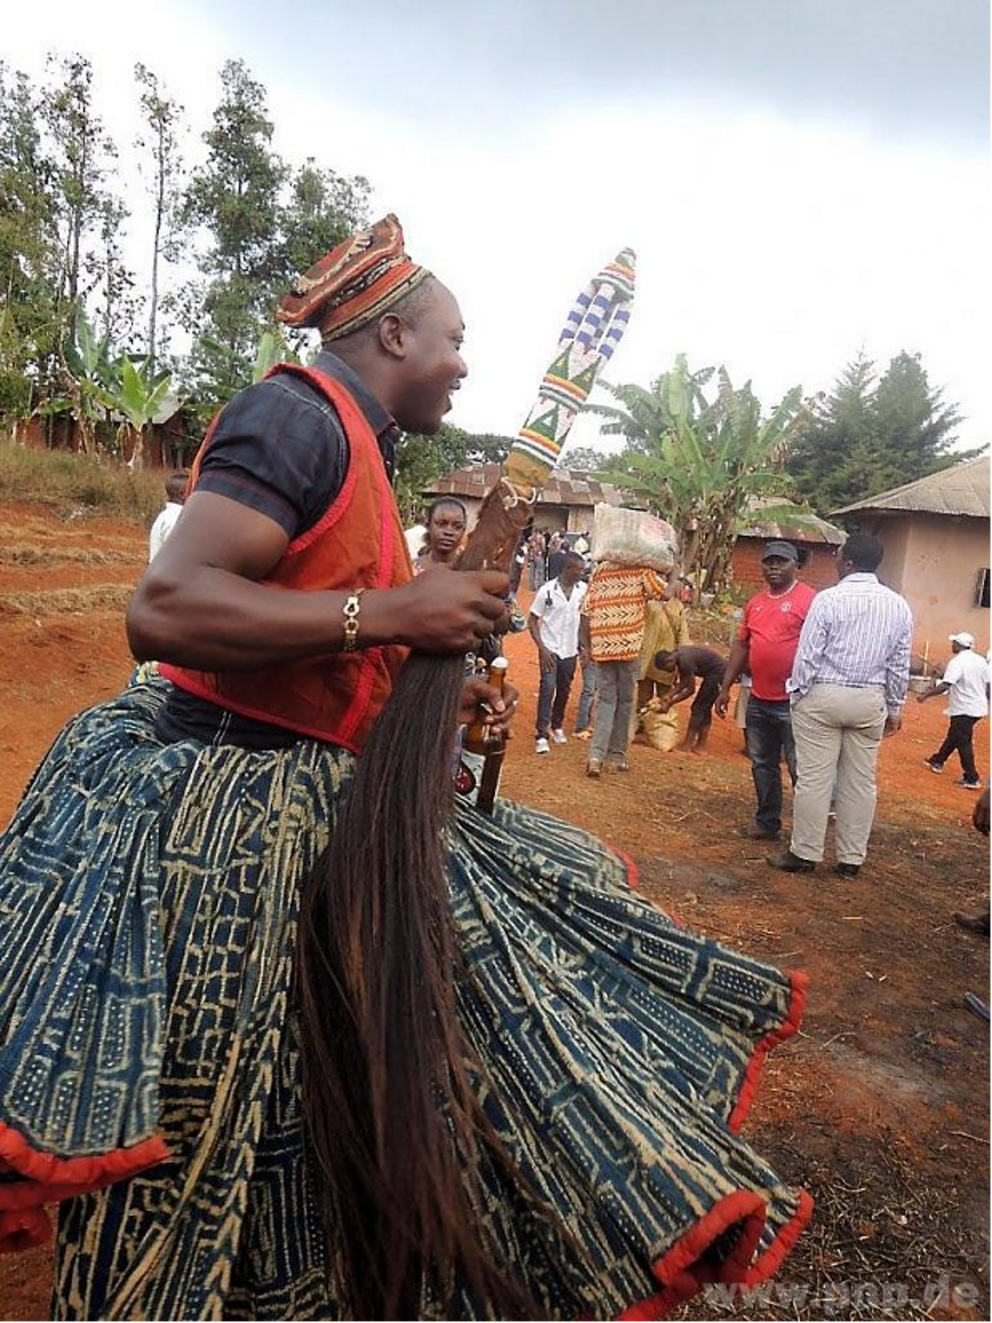 Ein Einblick in kamerunische Bräuche: Traditionelle Tänze auf einer Gedenkfeier für verstorbene Familienangehörige eines Freundes im Westen des Landes.